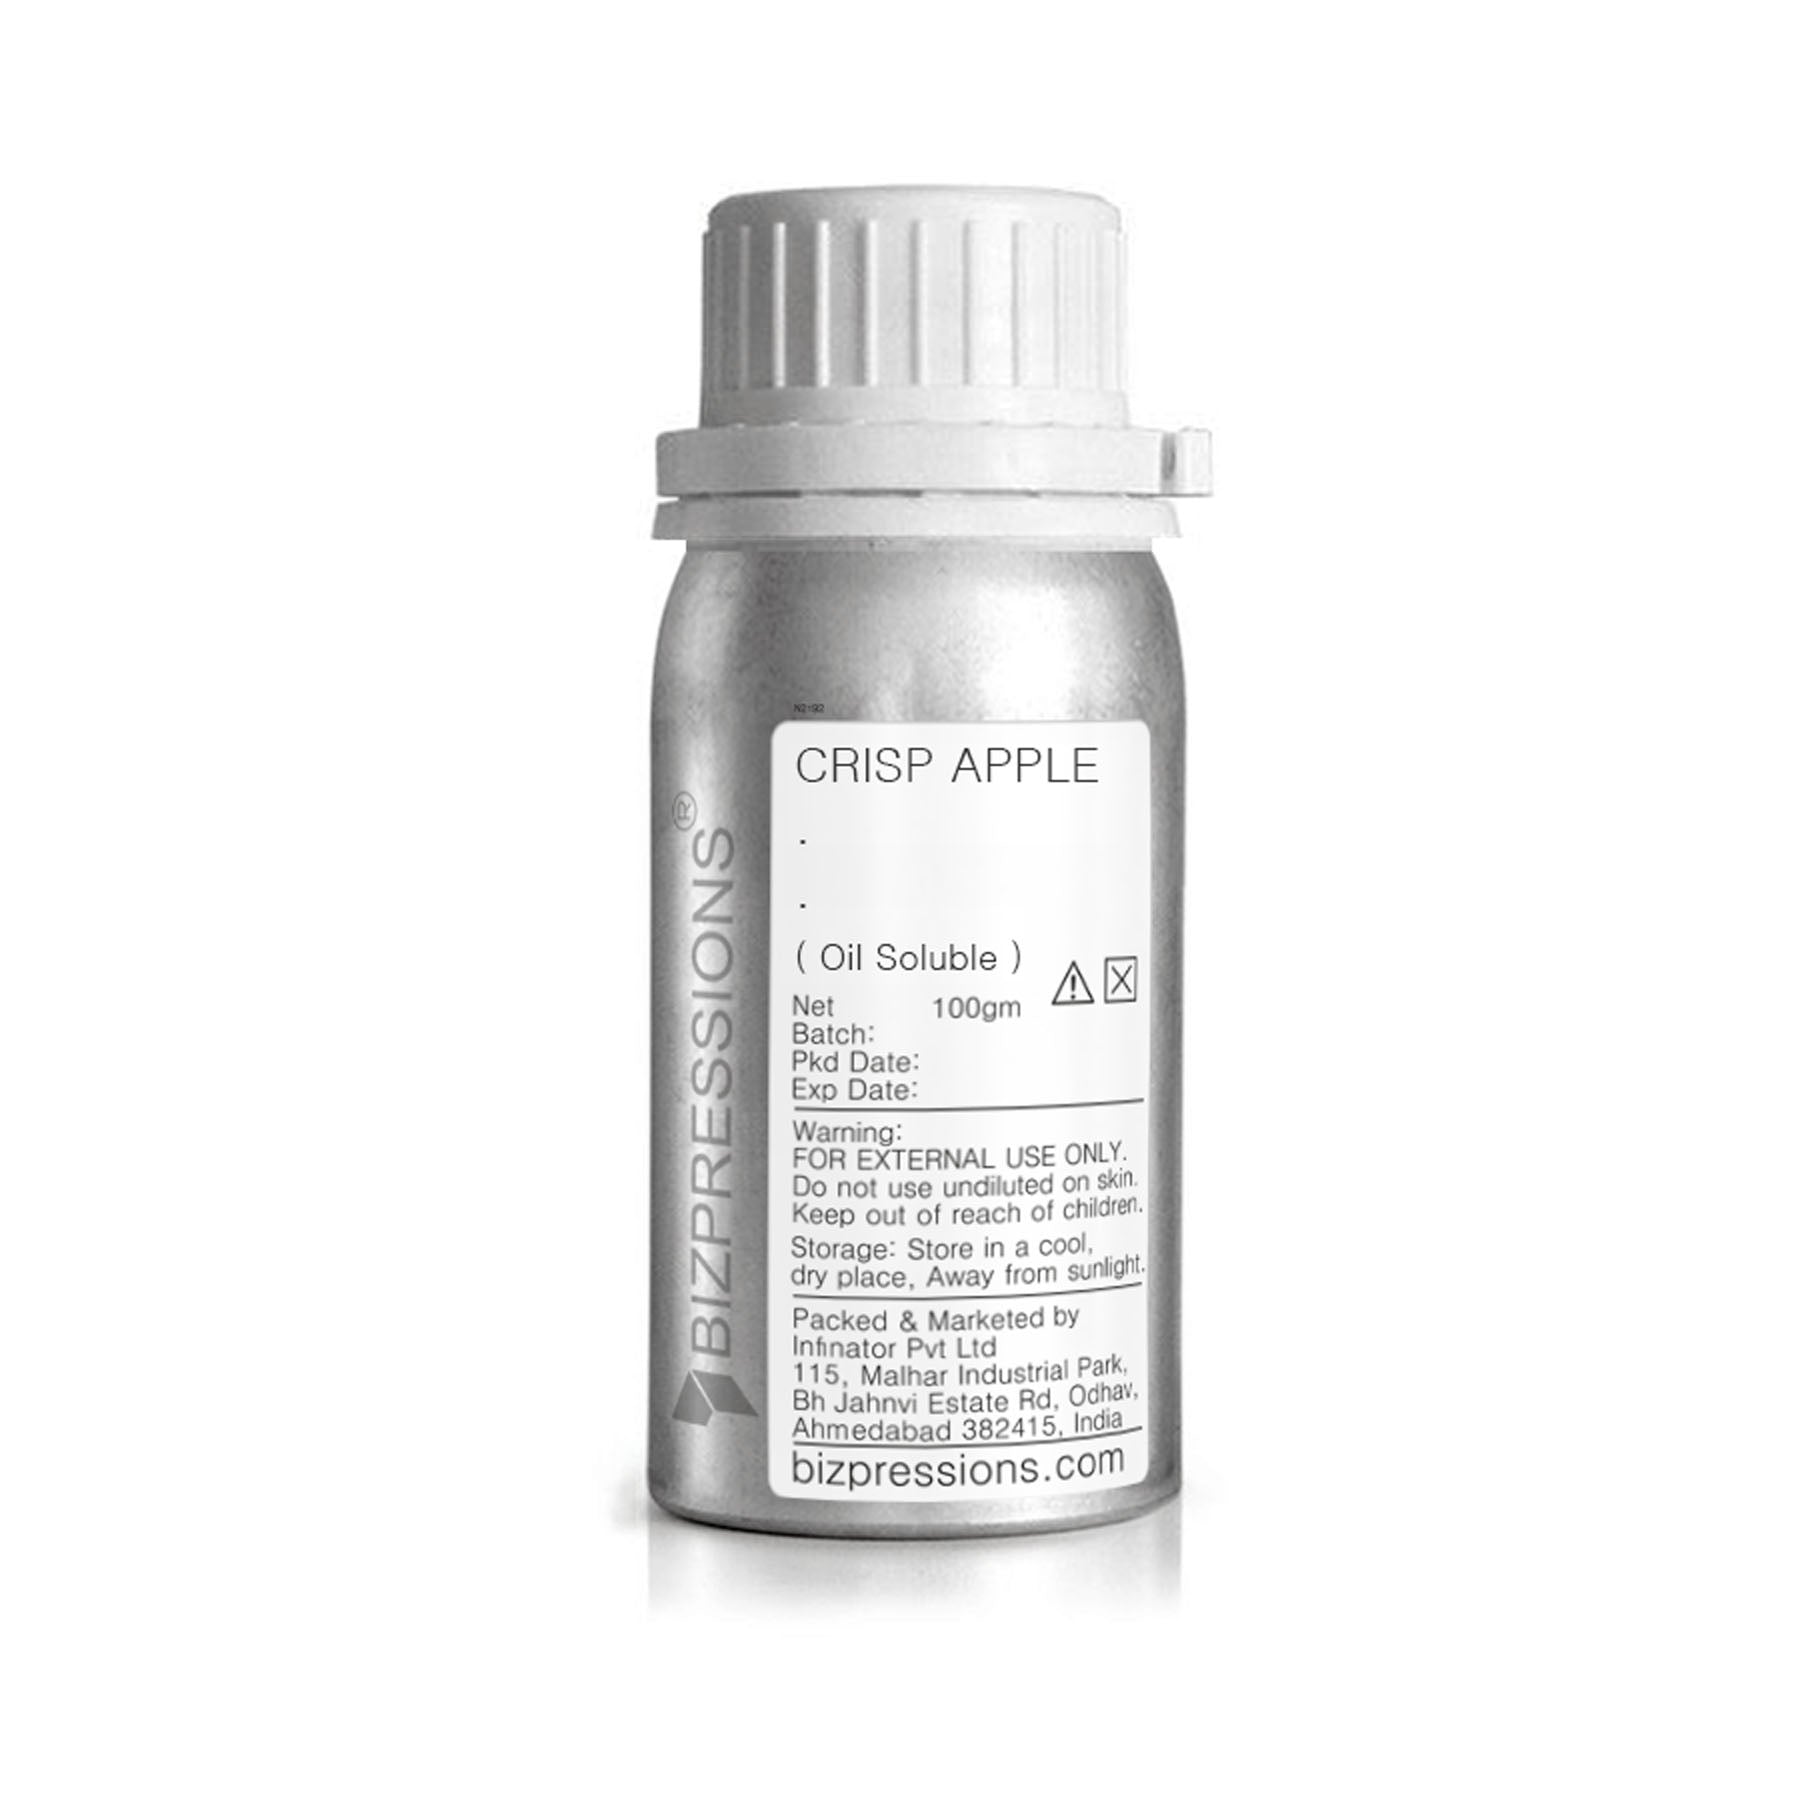 CRISP APPLE - Fragrance ( Oil Soluble ) - 100 gm